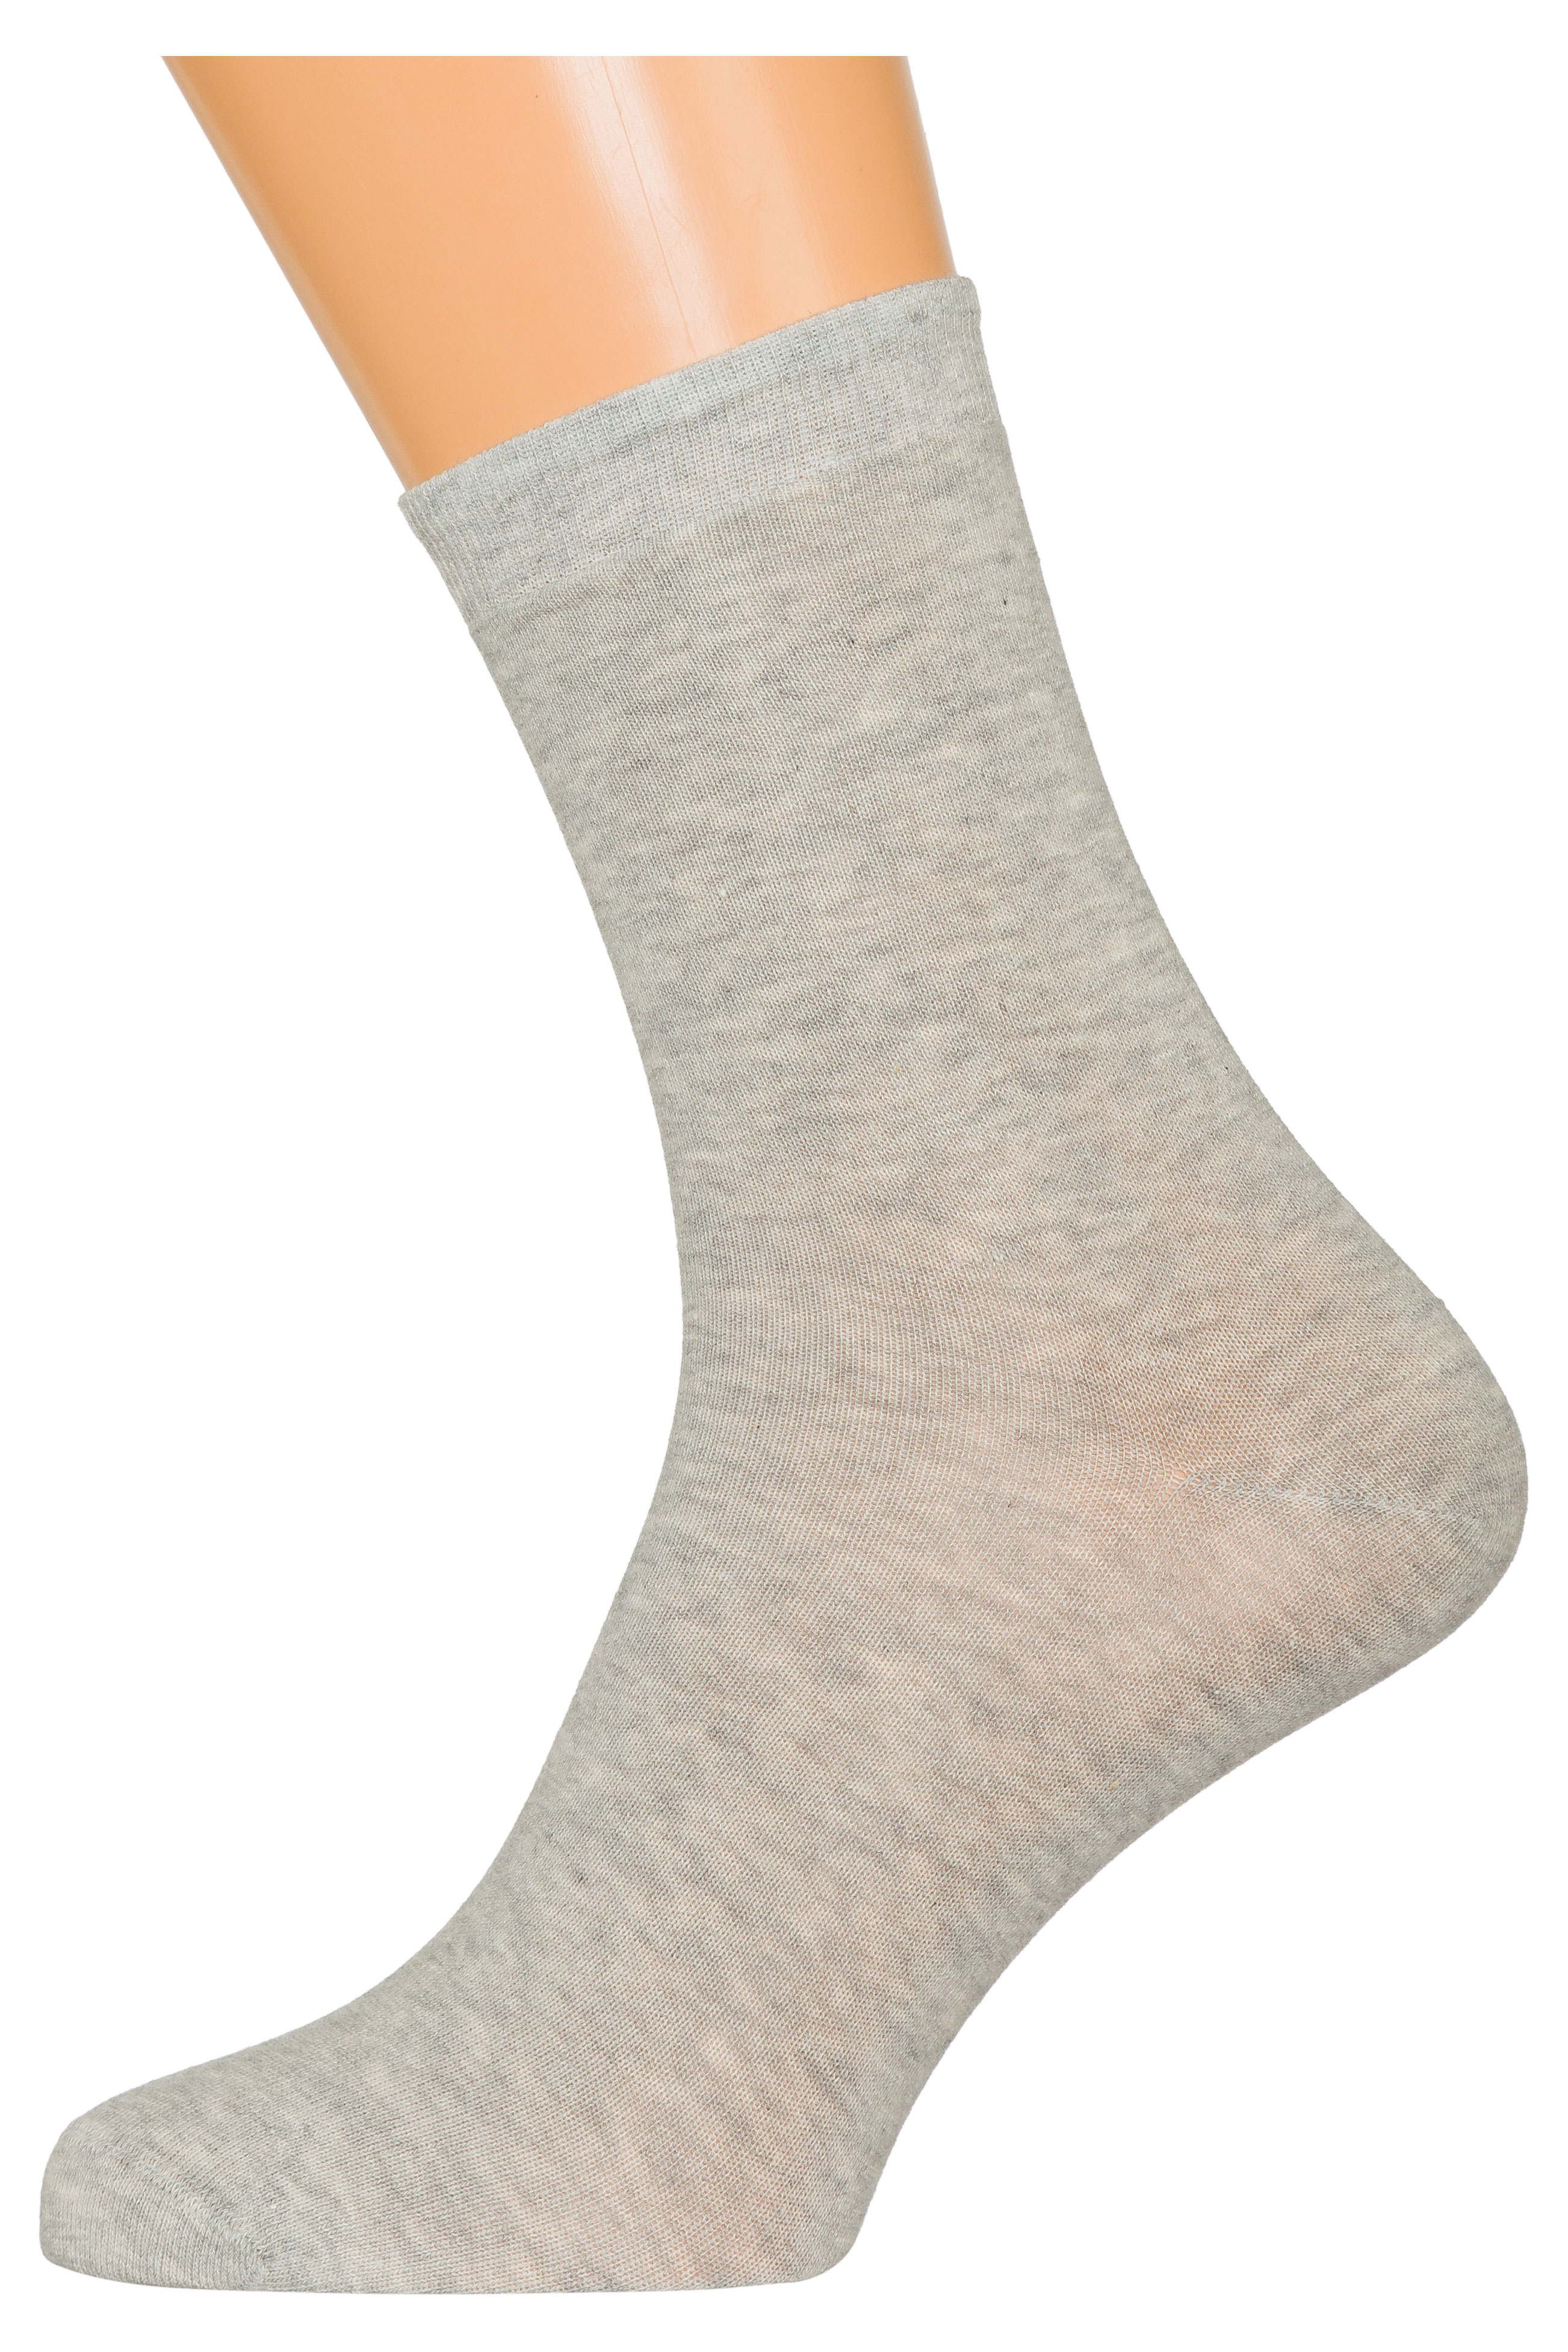 Носки мужские «ХОХ» Х-3R15 светло-серые, размер 29